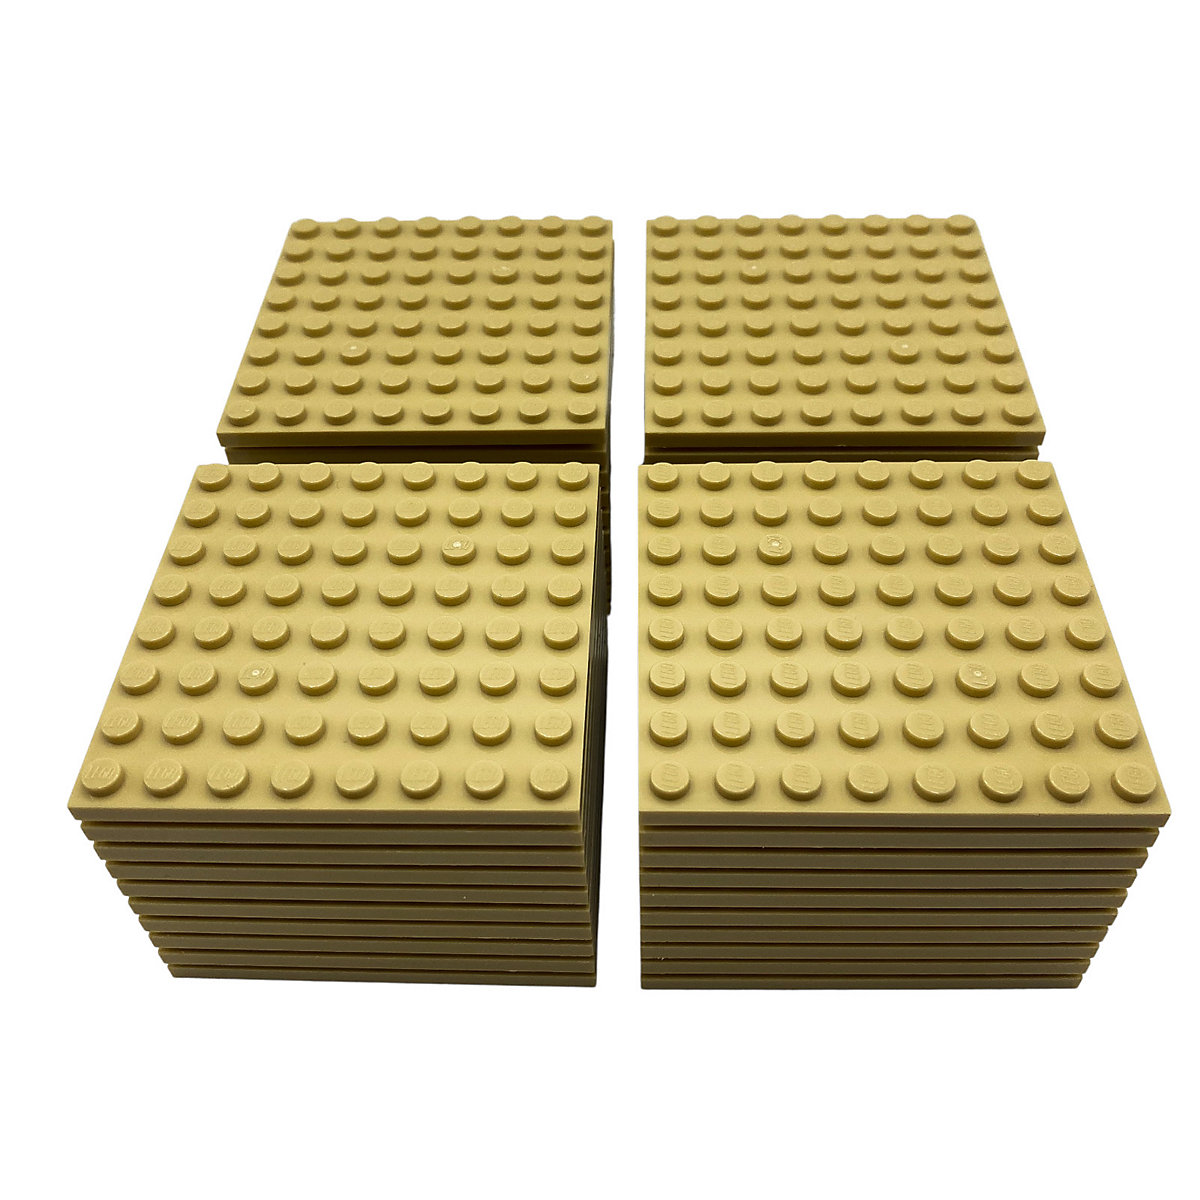 LEGO® 8x8 Bauplatten Tan Beige Platten Beidseitig bebaubar Basics Classic 41539 Menge 25x